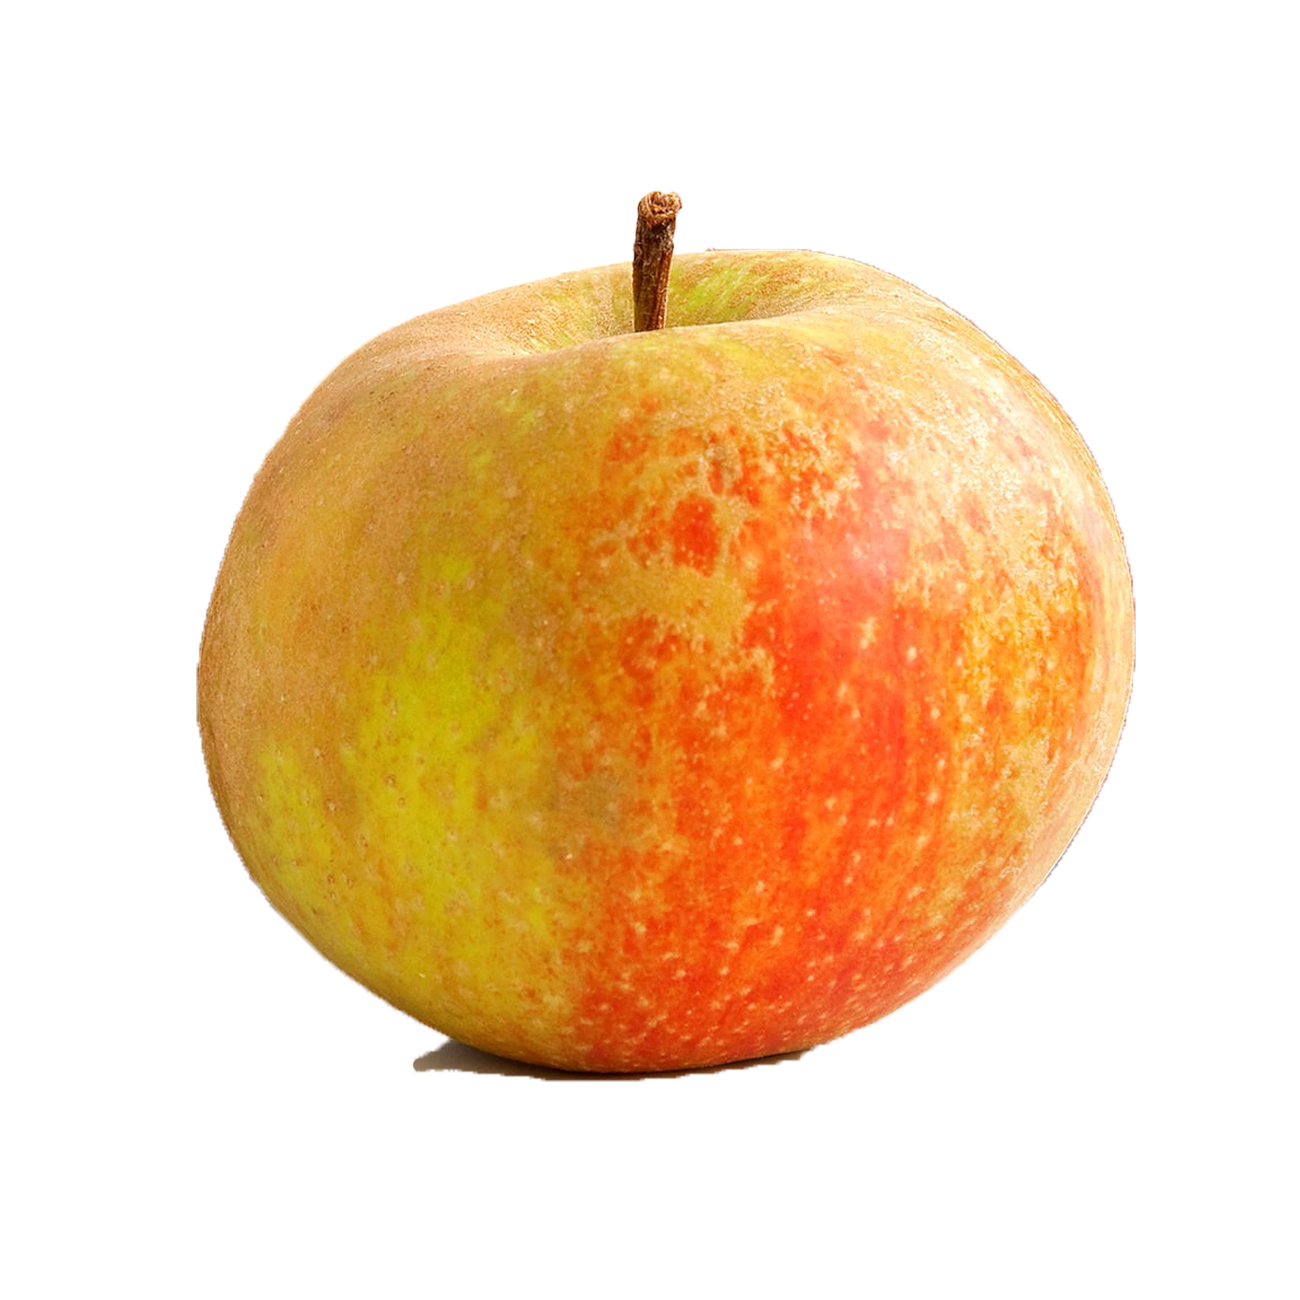 Apfel Boskoop